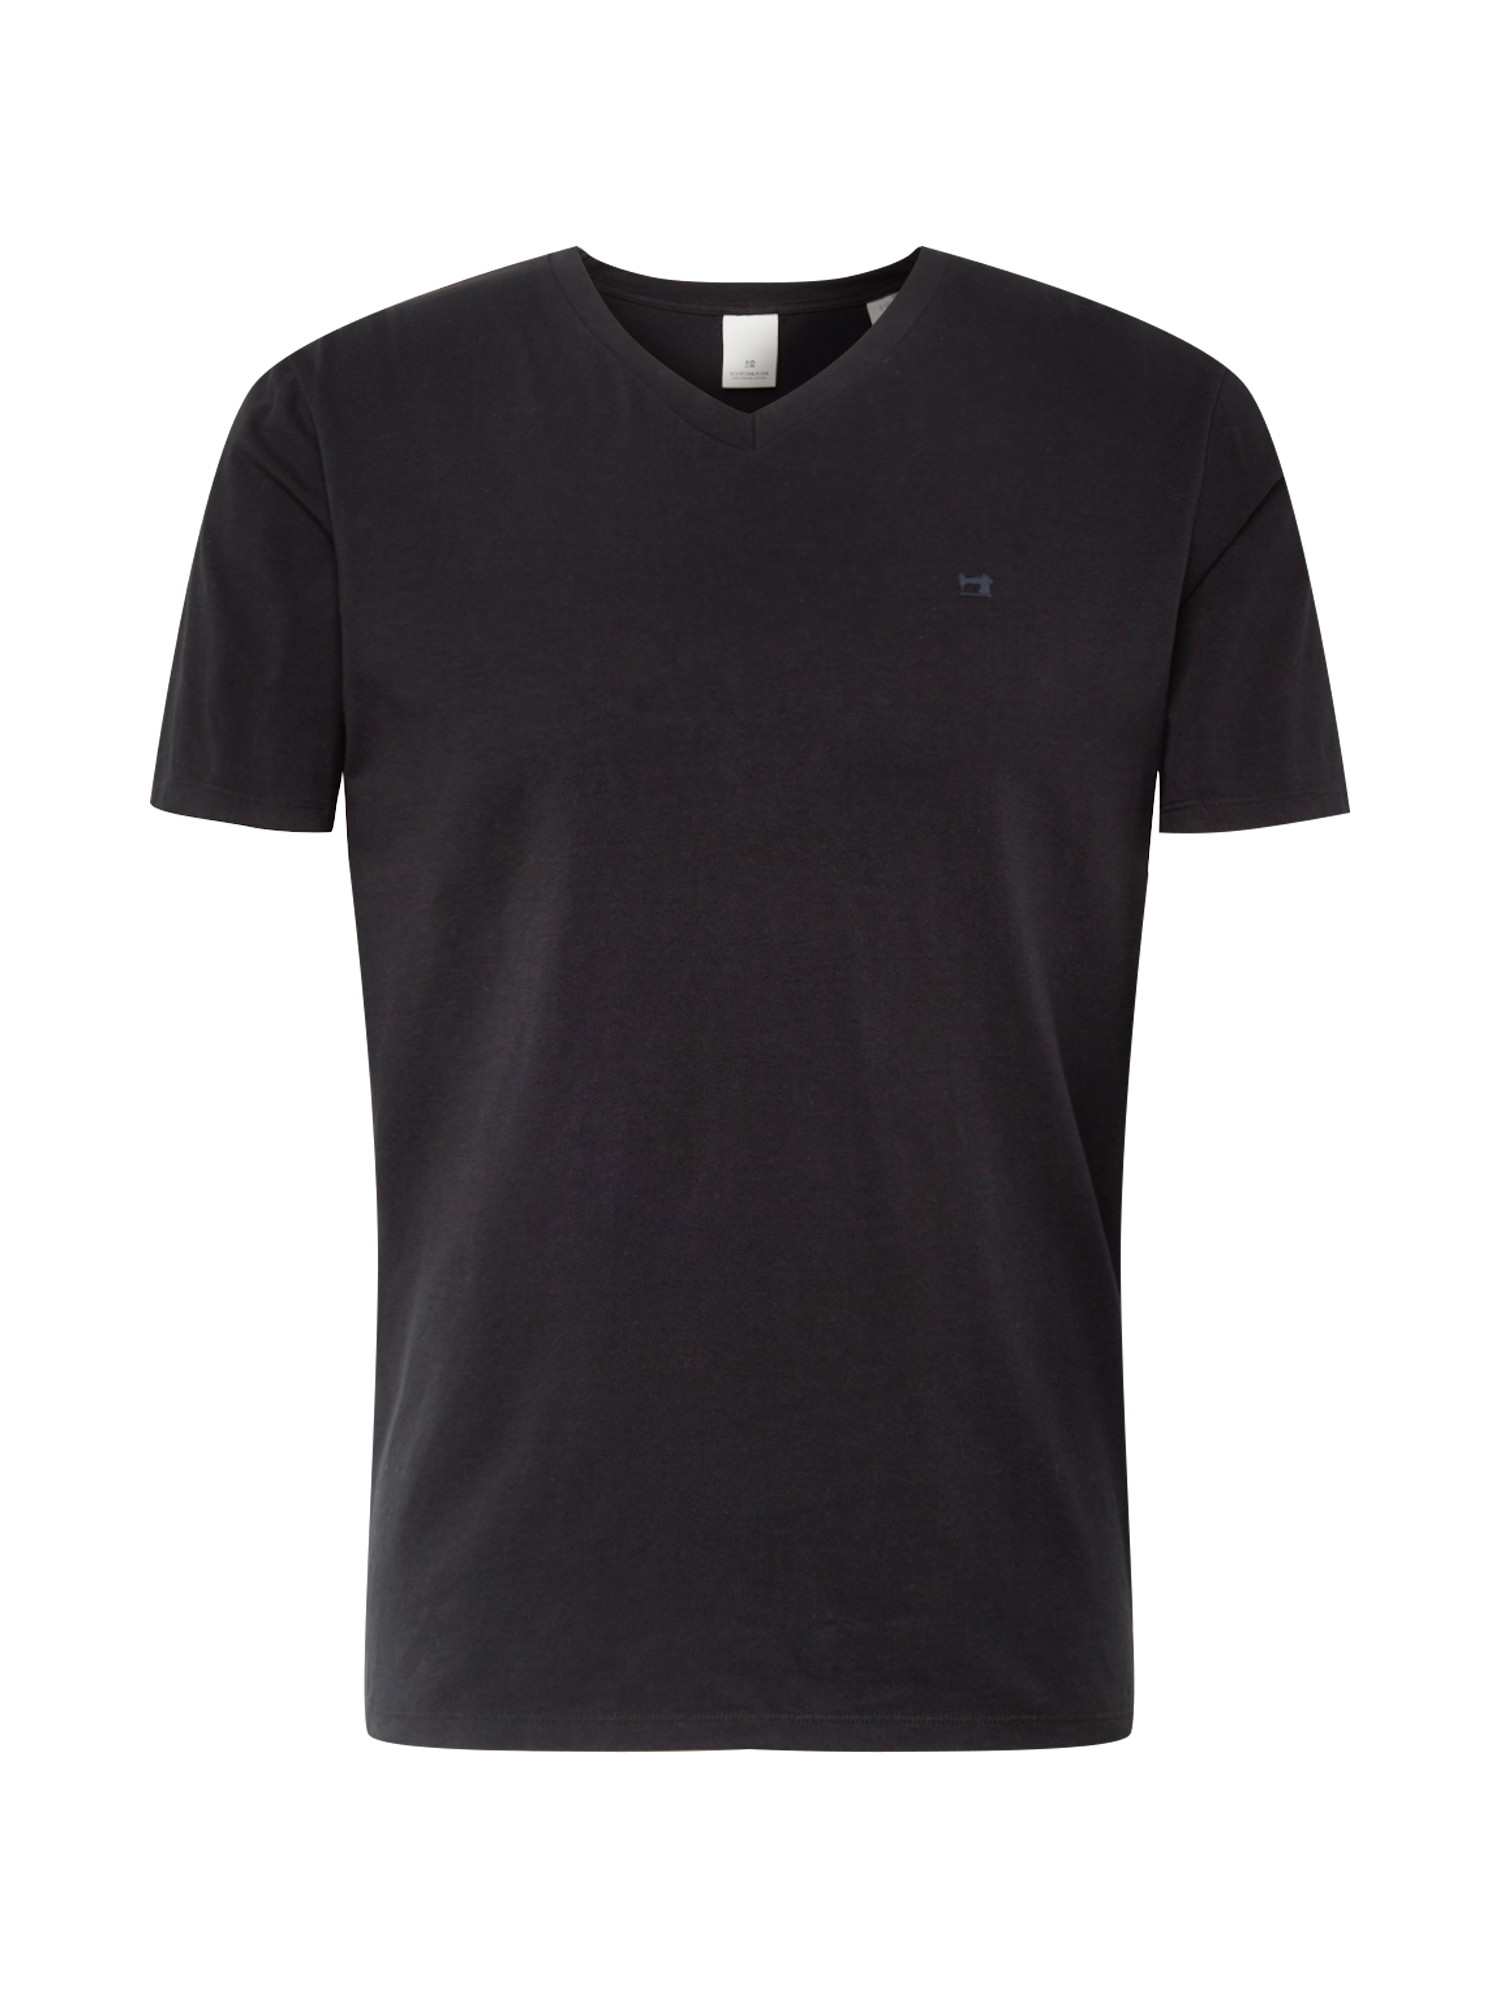 Odzież Mężczyźni SCOTCH & SODA Koszulka w kolorze Czarnym 